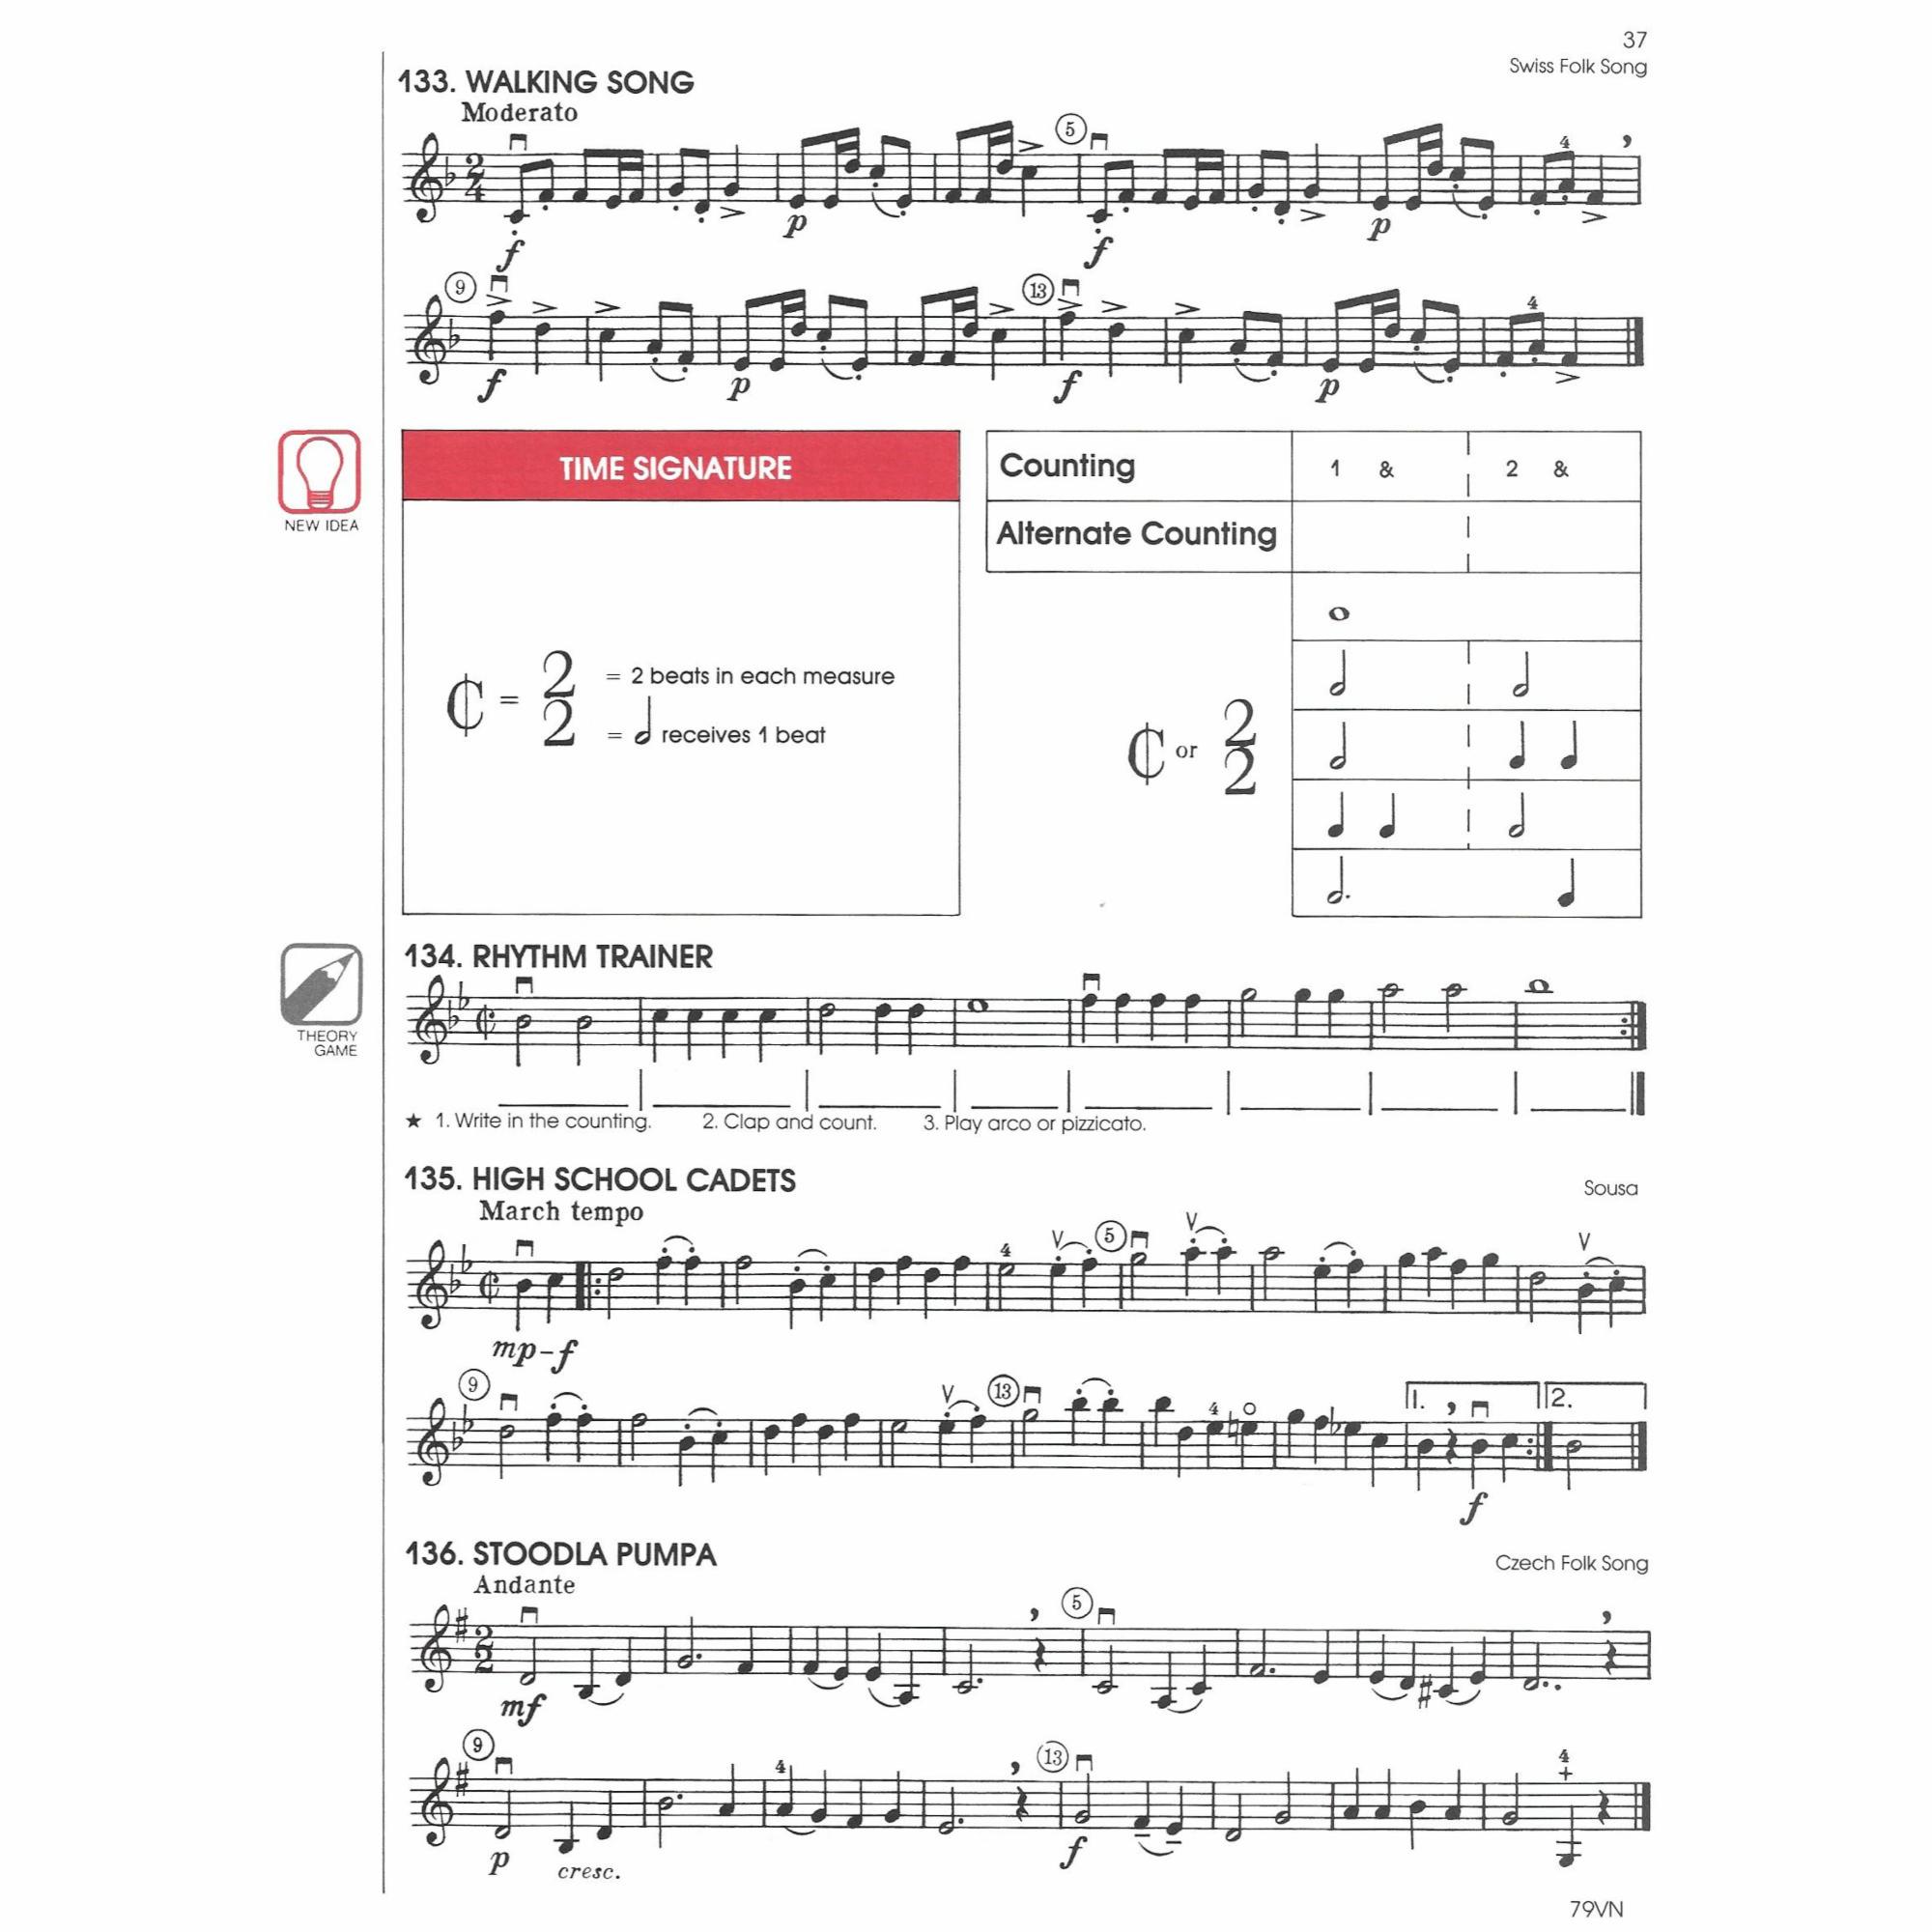 Sample: Violin (Pg. 37)